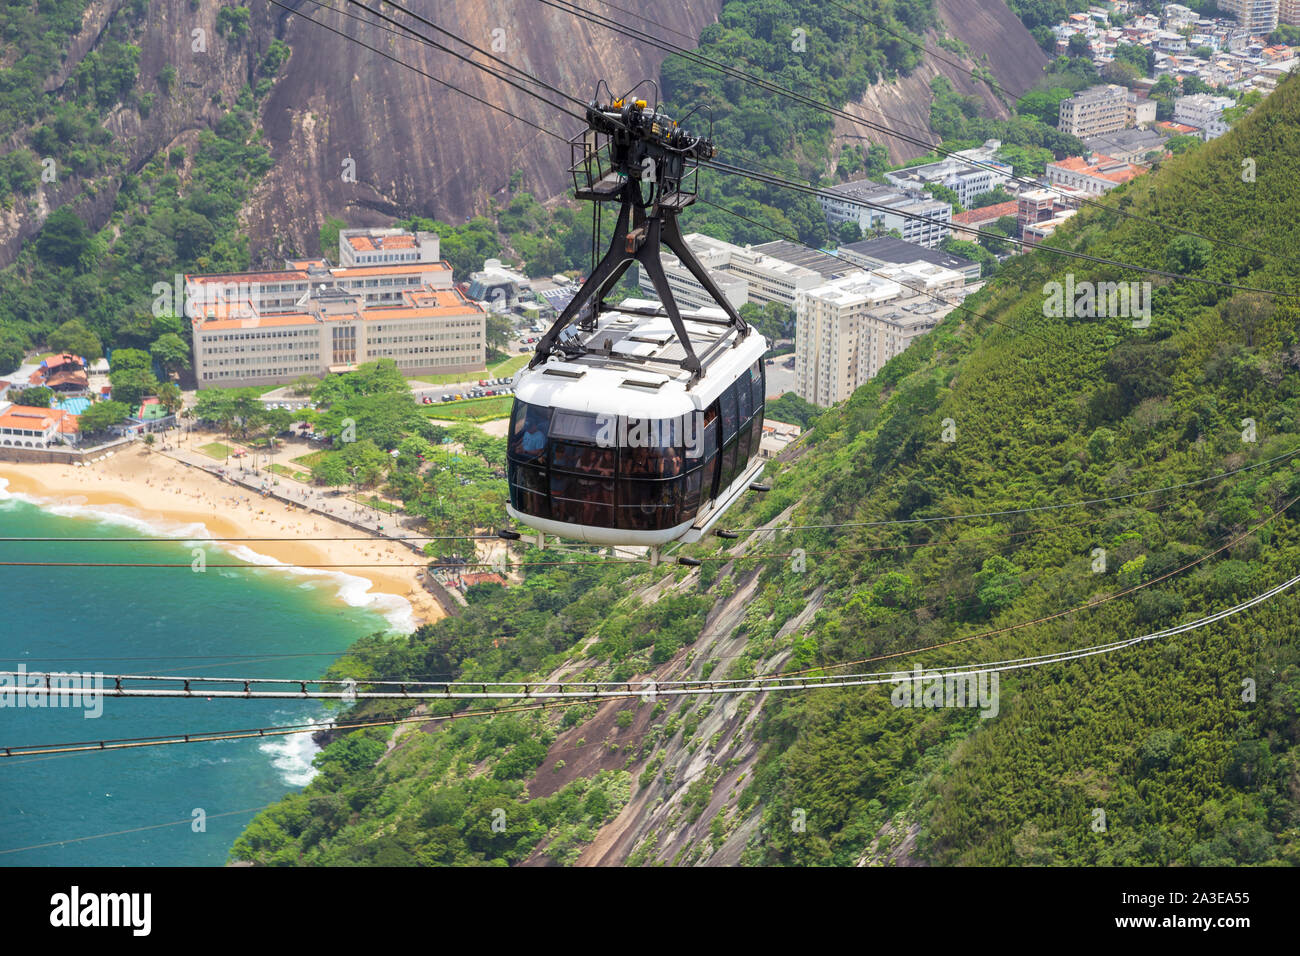 Rio de Janeiro/Brazil - October 20, 2018: Aerial View from the Top of Sugar Loaf Mountain (Pão de Açúcar) and the famous Cable Car (Bondinho). Stock Photo